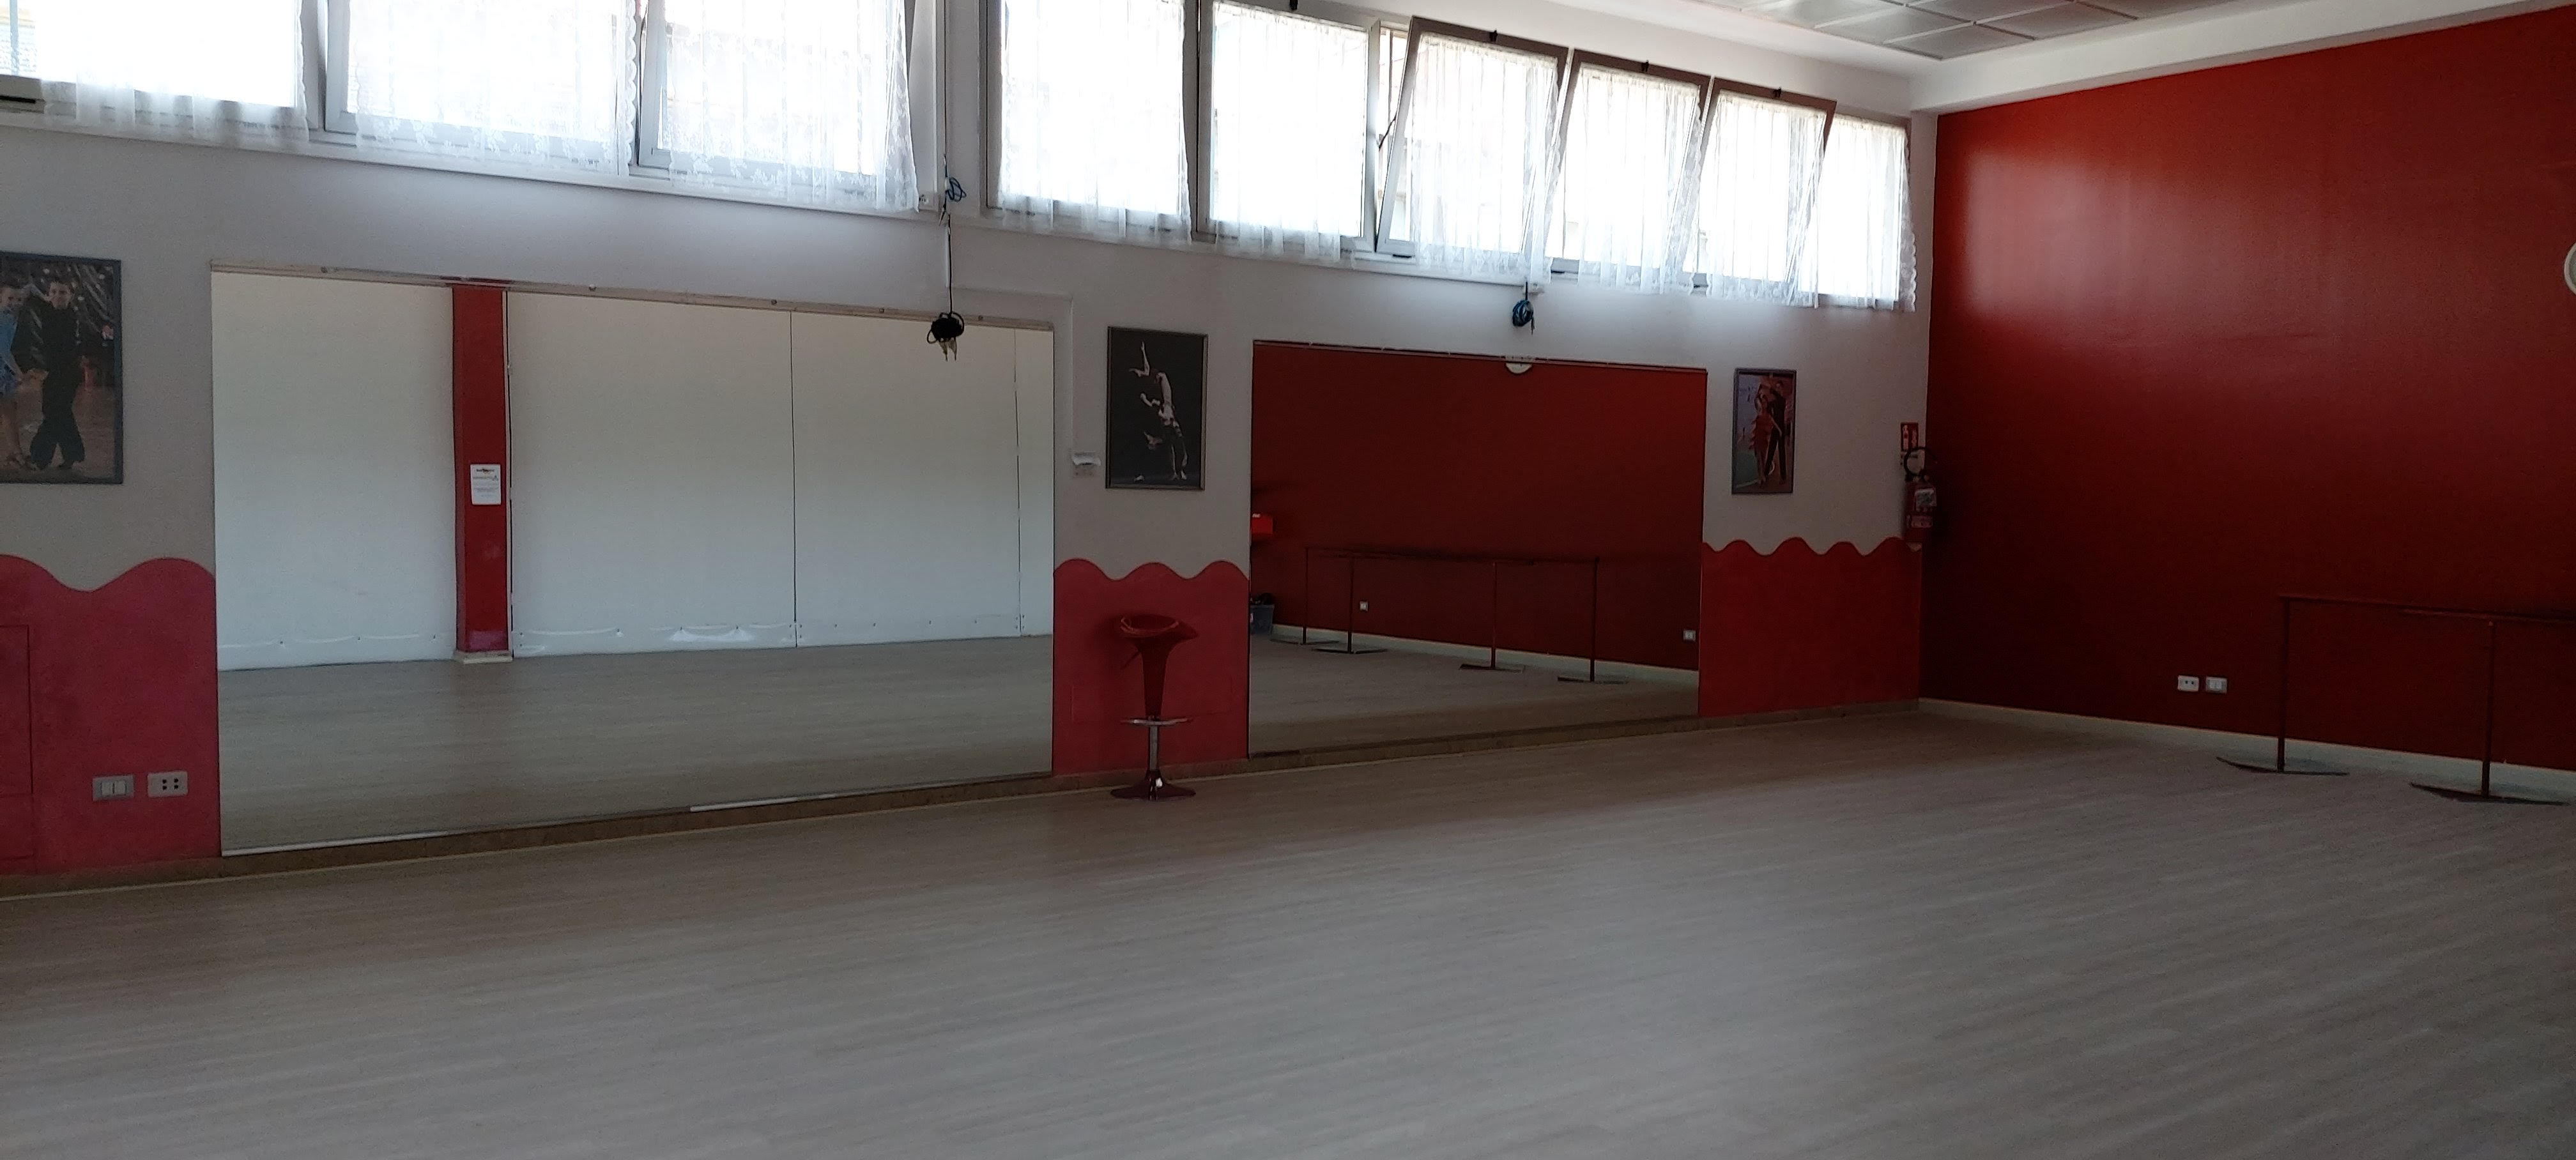 Sala Rossa Dance Studio 63 Scuola di Ballo a Bologna